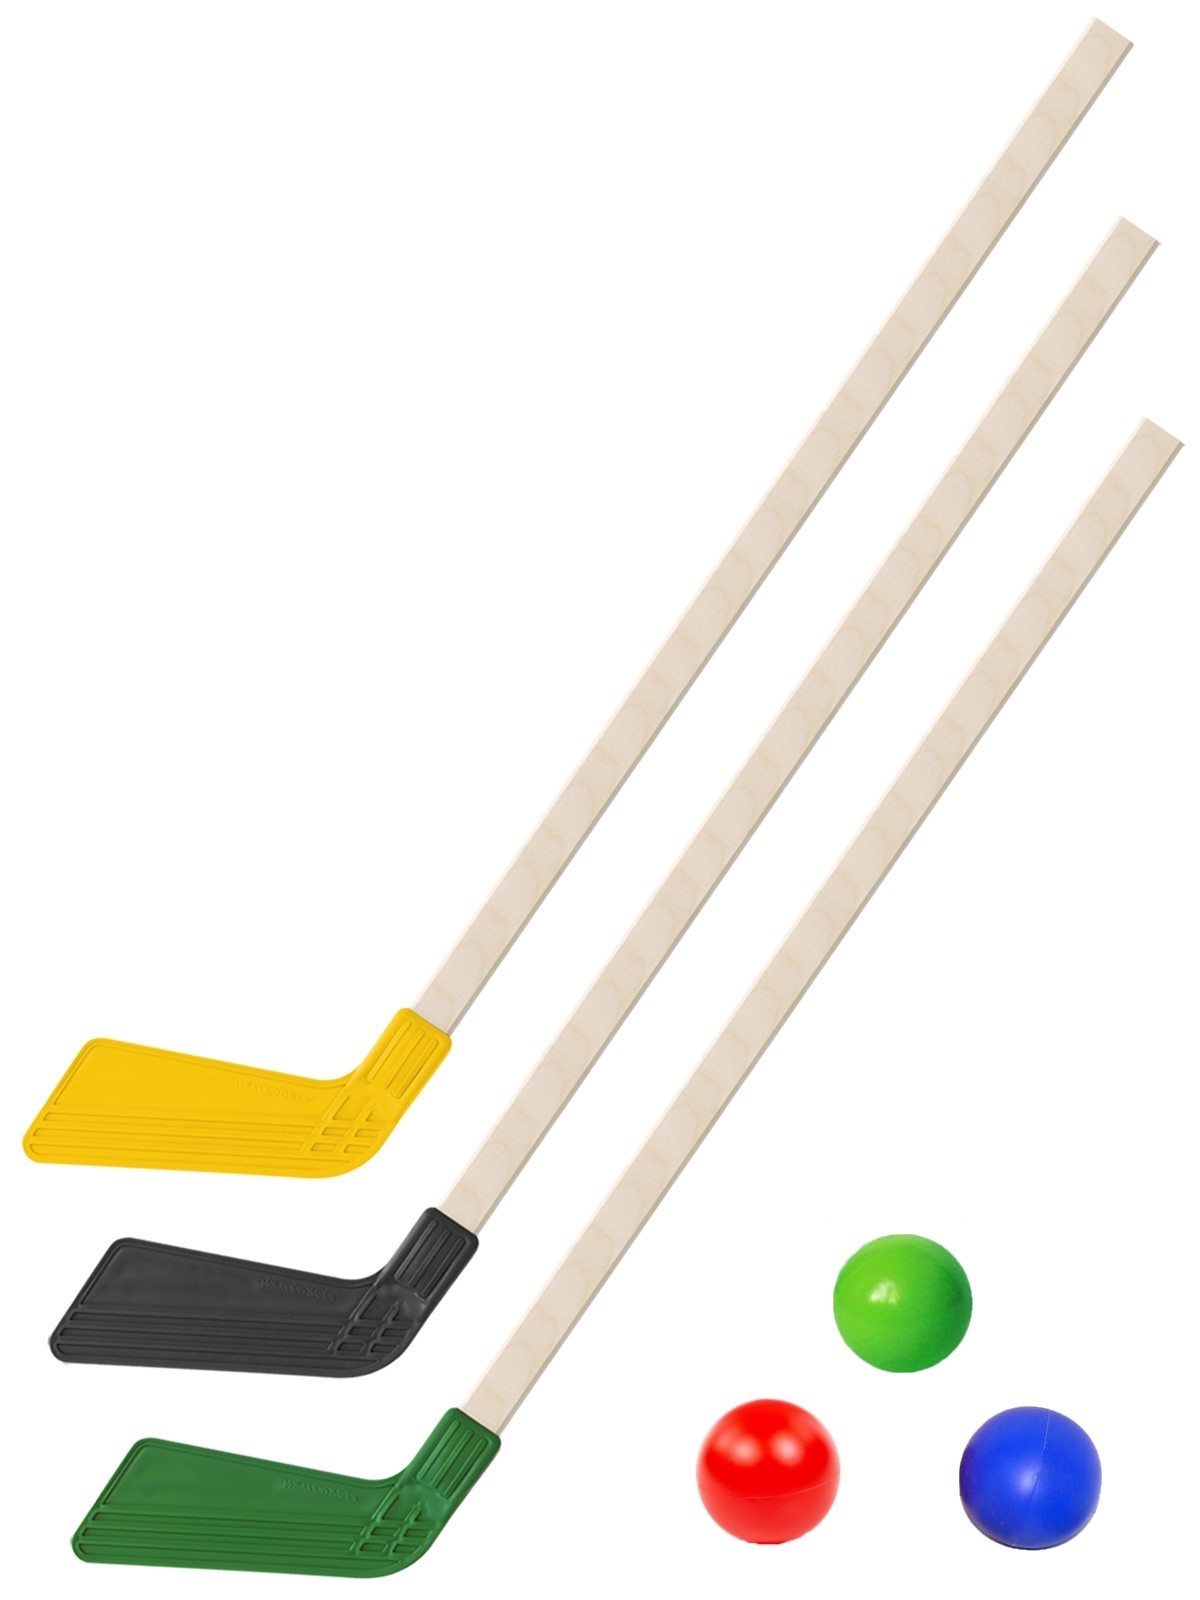 Детский хоккейный набор Задира-плюс Клюшка хоккейная детская 3шт (черн+желт+зелен)+3 мяча